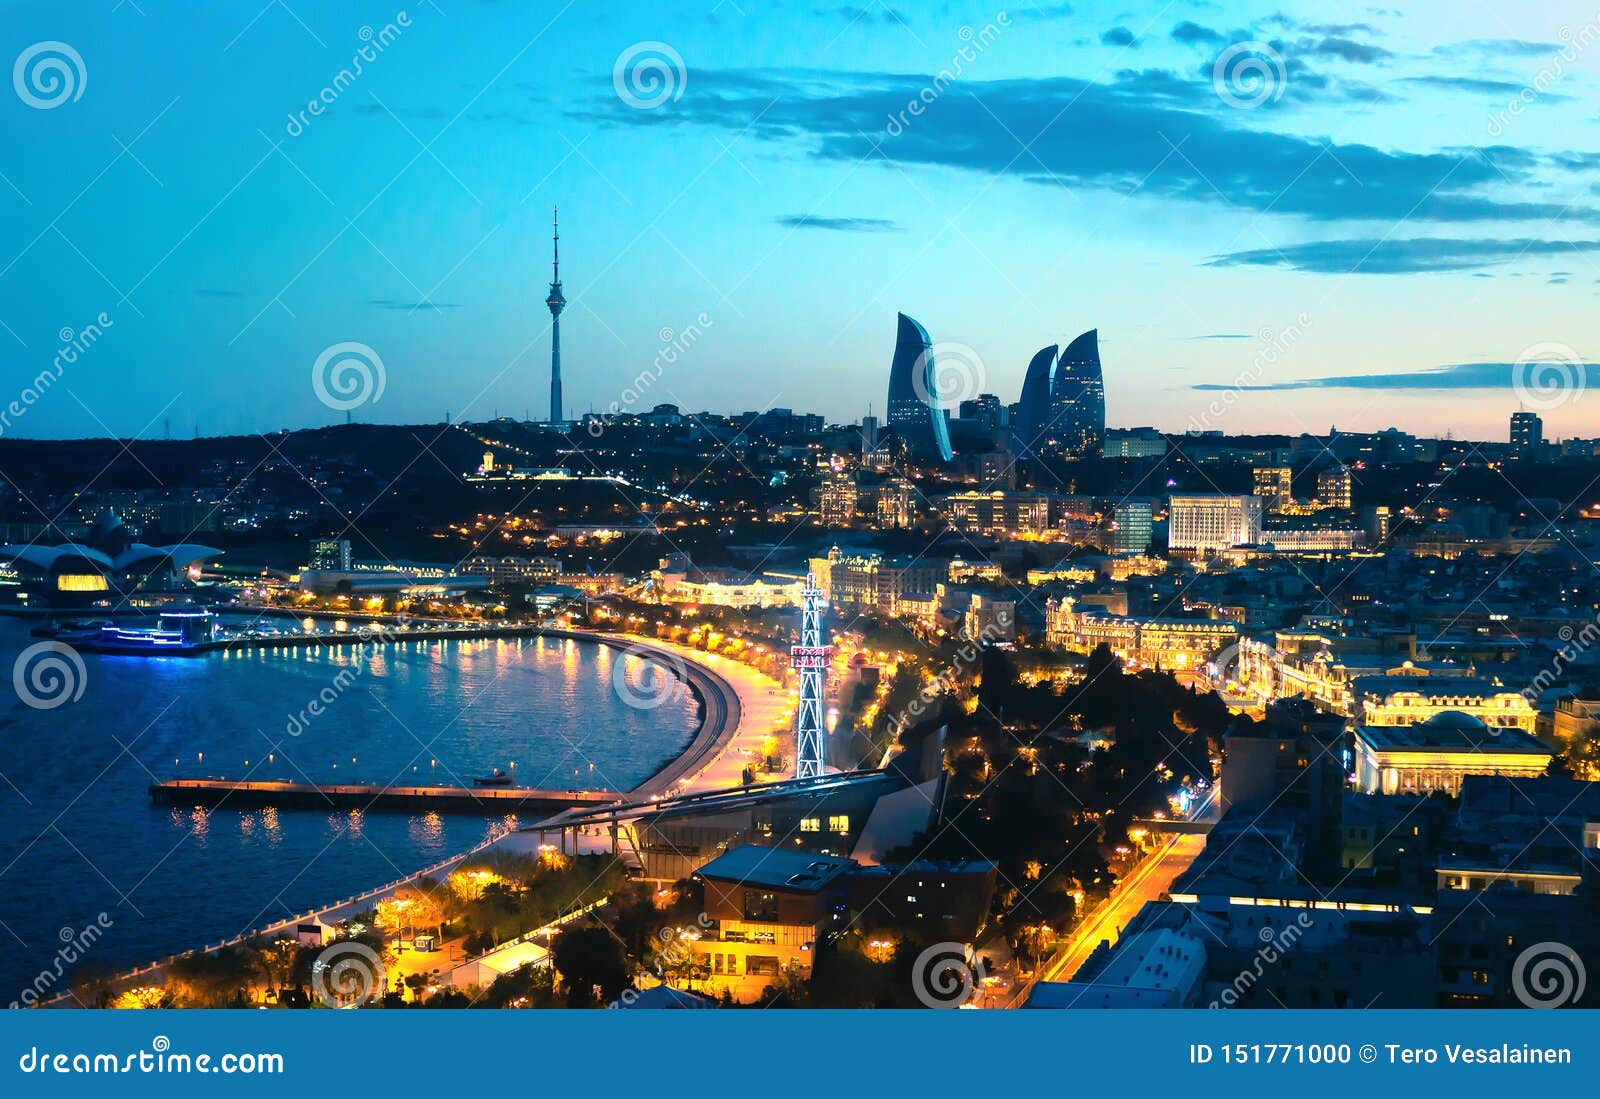 Man Made Baku HD Wallpaper